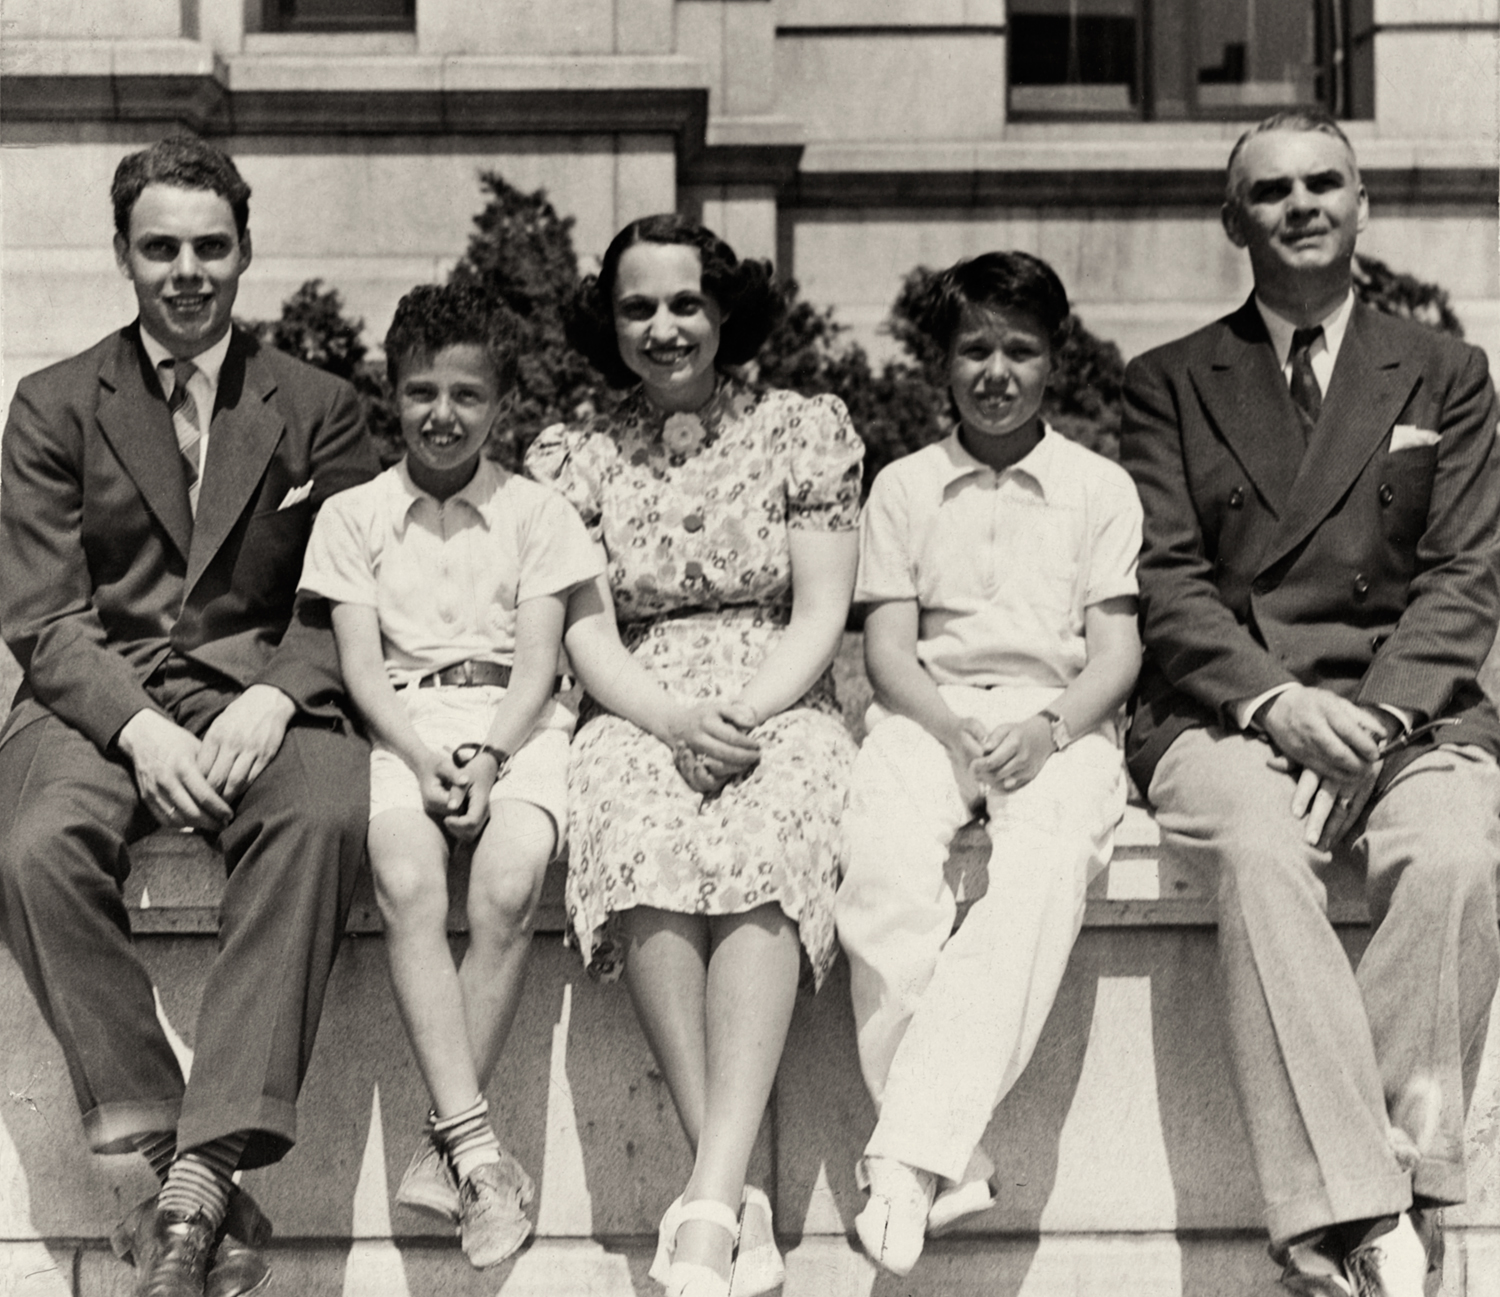 Doug, Richard, Kathryn, Buddy and Harry, 1938